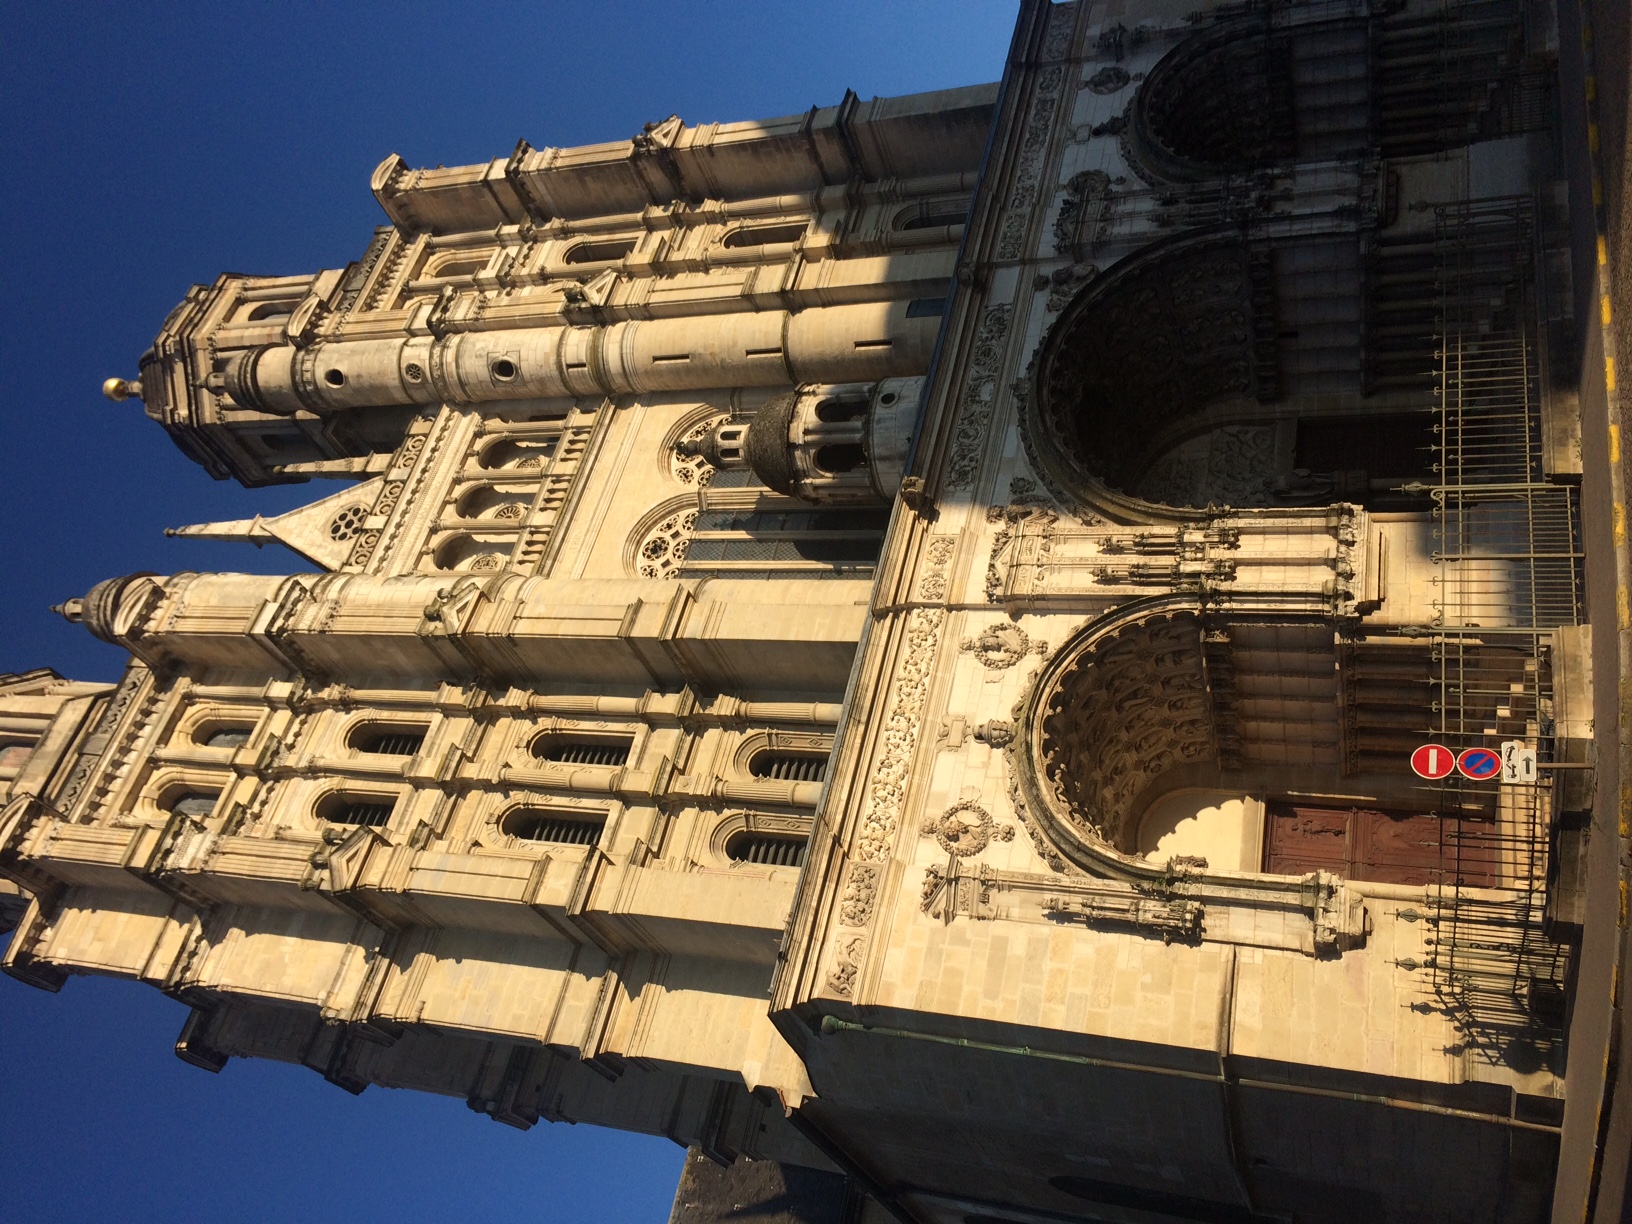 Notre Dame in Dijon